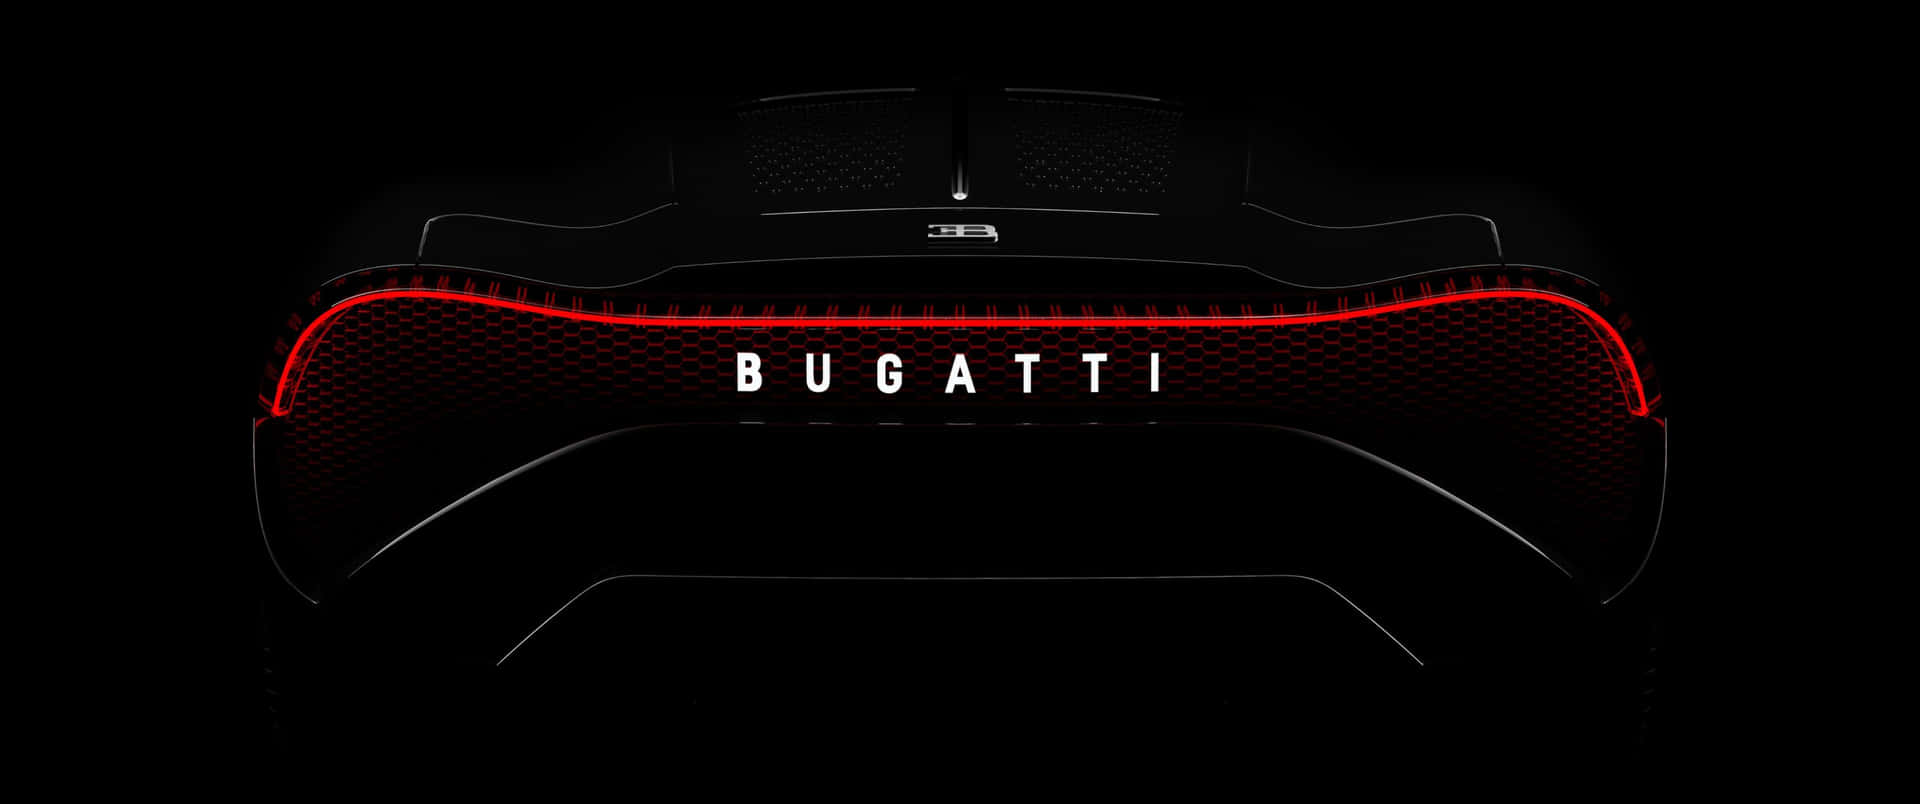 The Bugatti Tt - A Concept Car